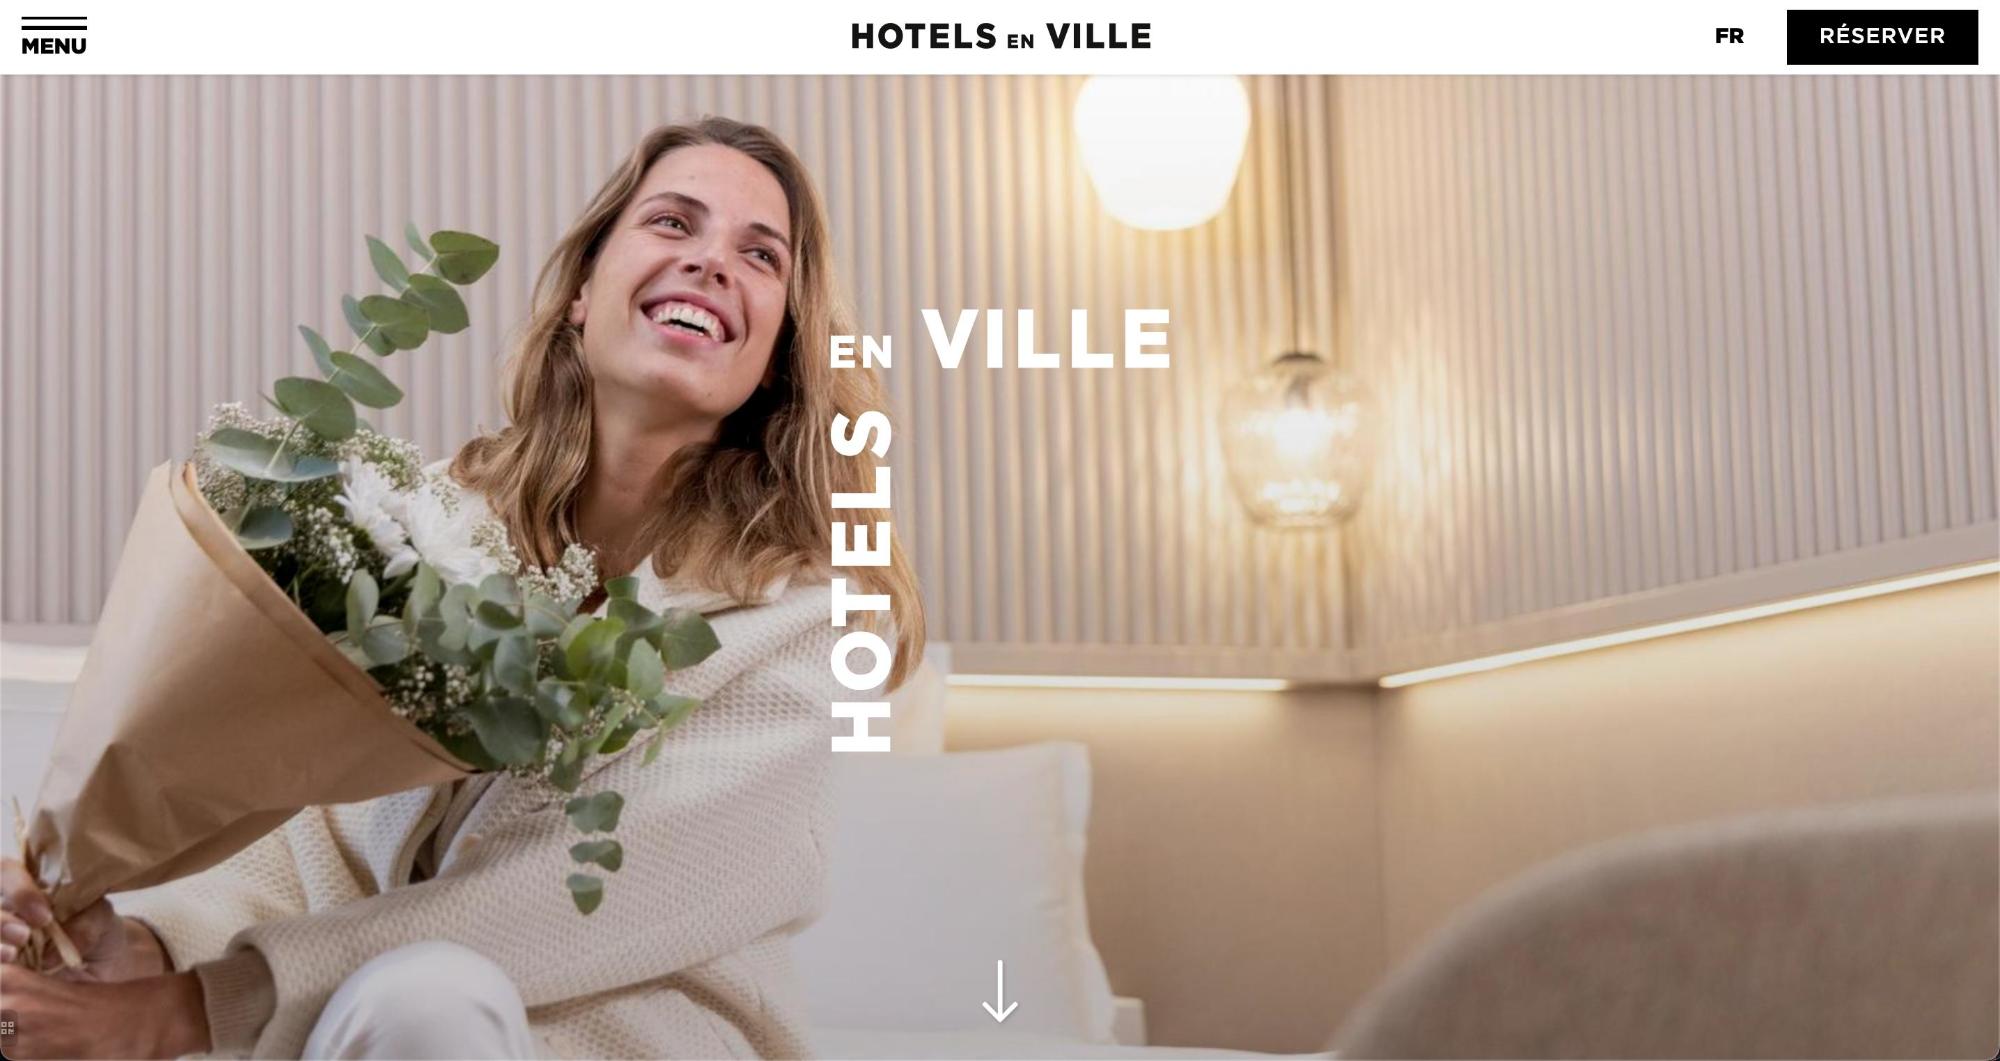 Agence MMCréation | Portfolio Hotels en Ville